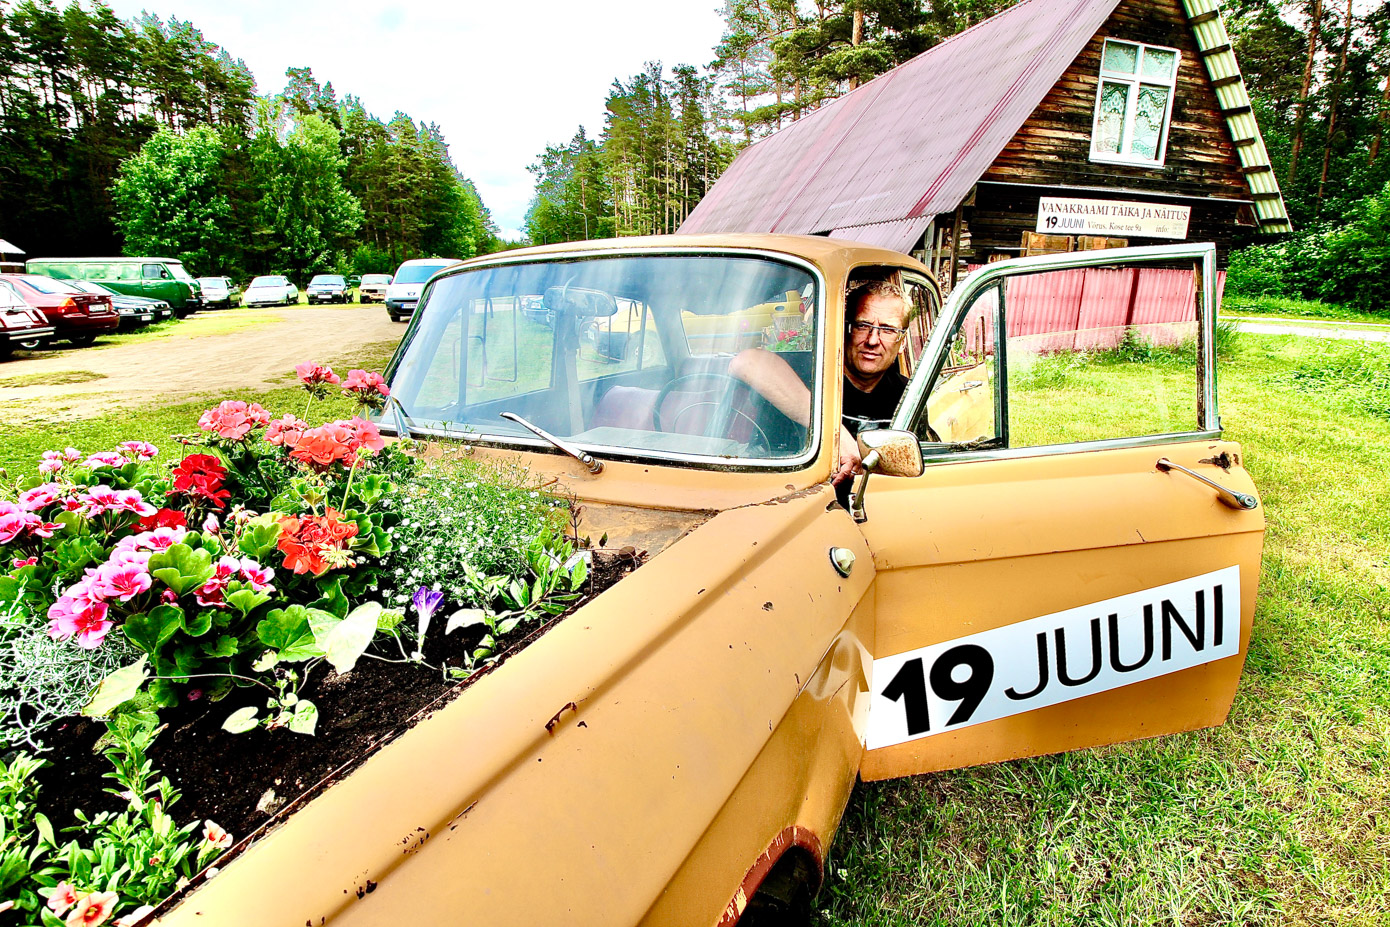 See „mosse” pretendeerib maailma kõige rohelisemaks autoks, sest mootori liikumapanevaks jõuks on lilled, mis pärit müütilisest Seebaaiast Jaana Trolla hoole alt. Auto ukse vahelt piilub vanakraamifänn Aivo Proskin. Fotod: KALEV ANNOM